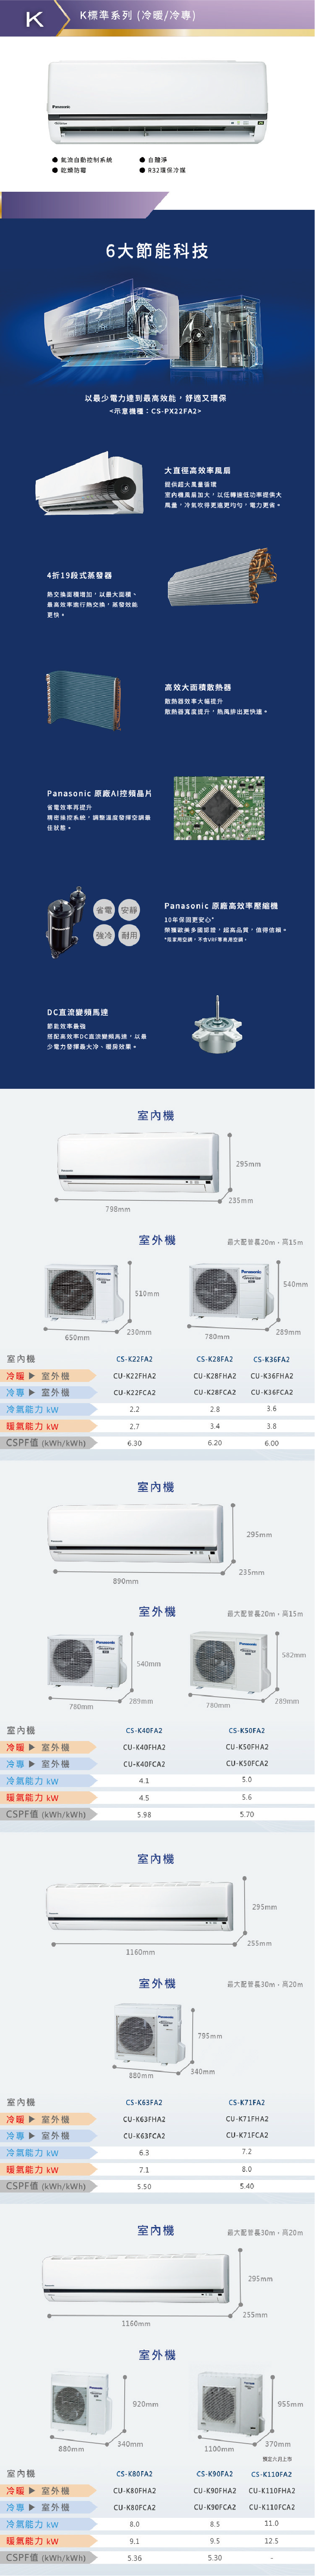 國際 CU-K110FCA2 18坪適用 K系列 分離式 變頻 冷專 冷氣 CS-K110FA2